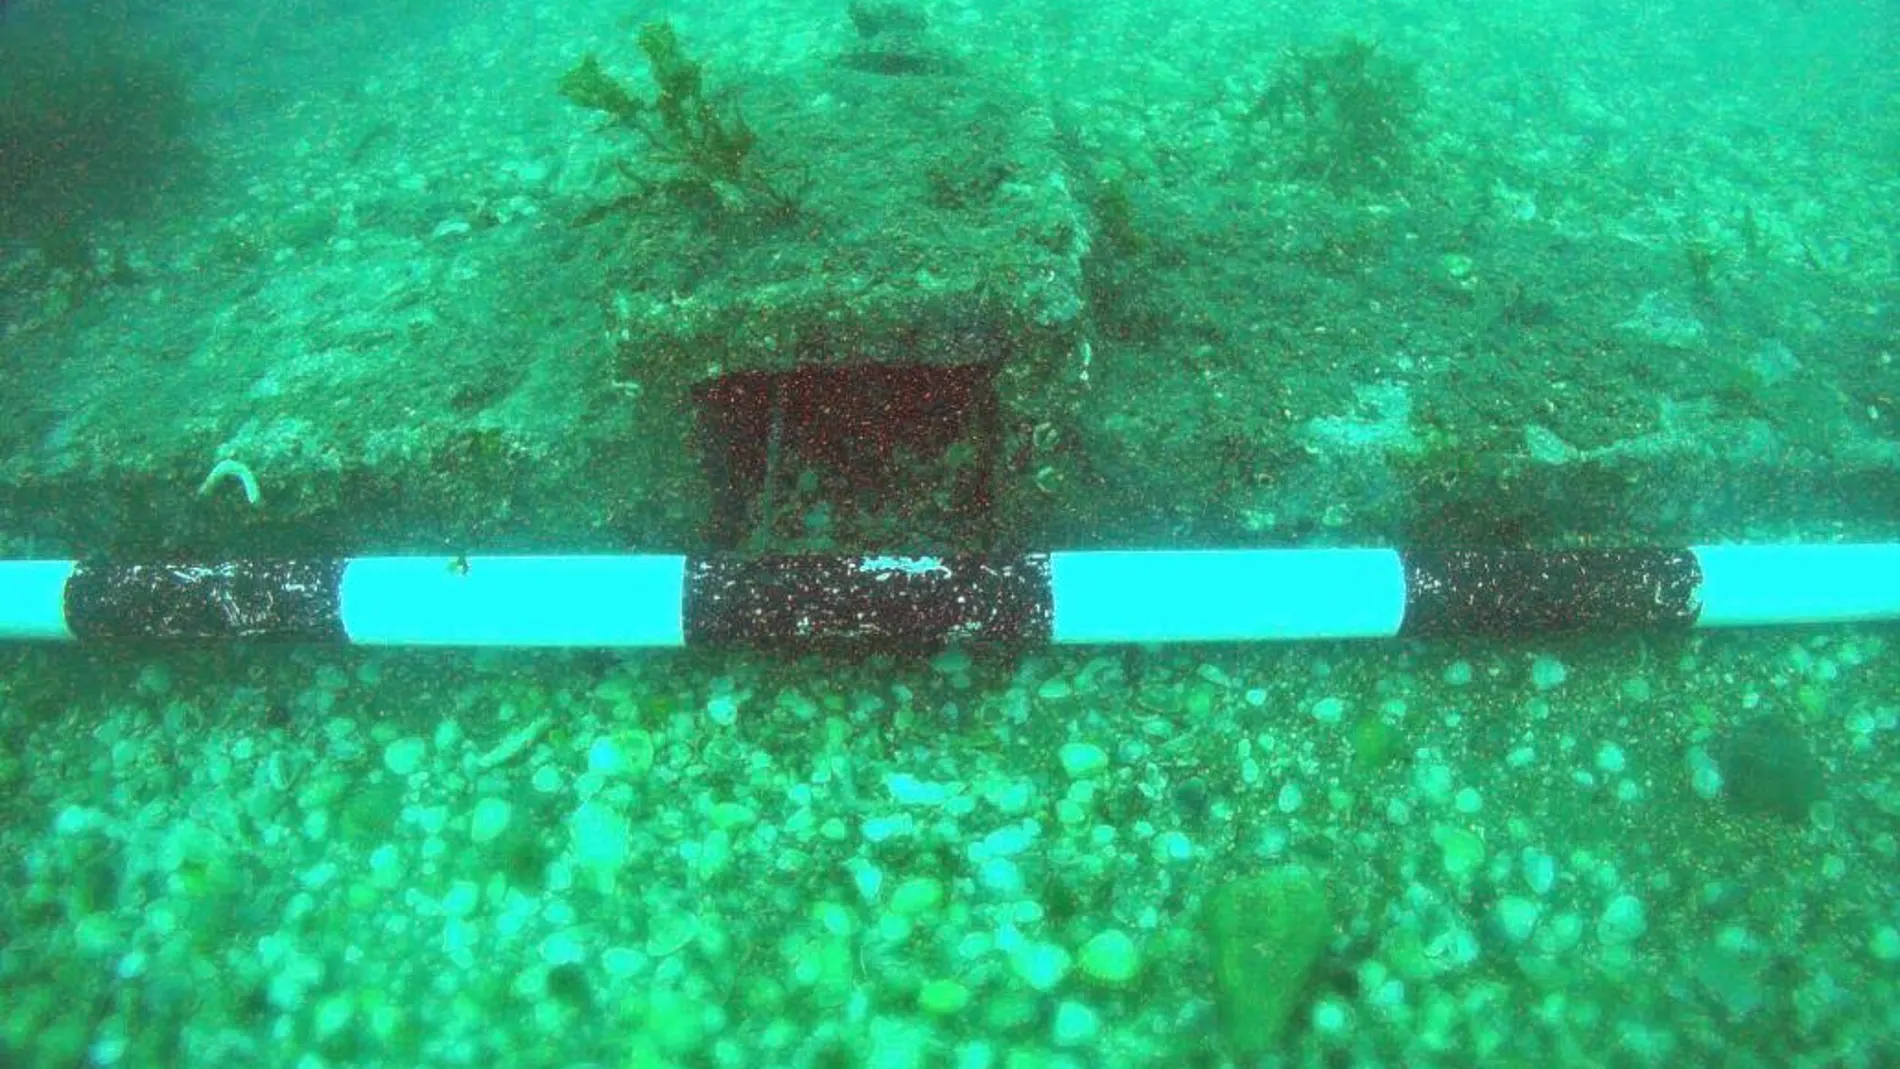 El cepo datado en el siglo I será recuperado del fondo del mar el próximo día 27 de mayo